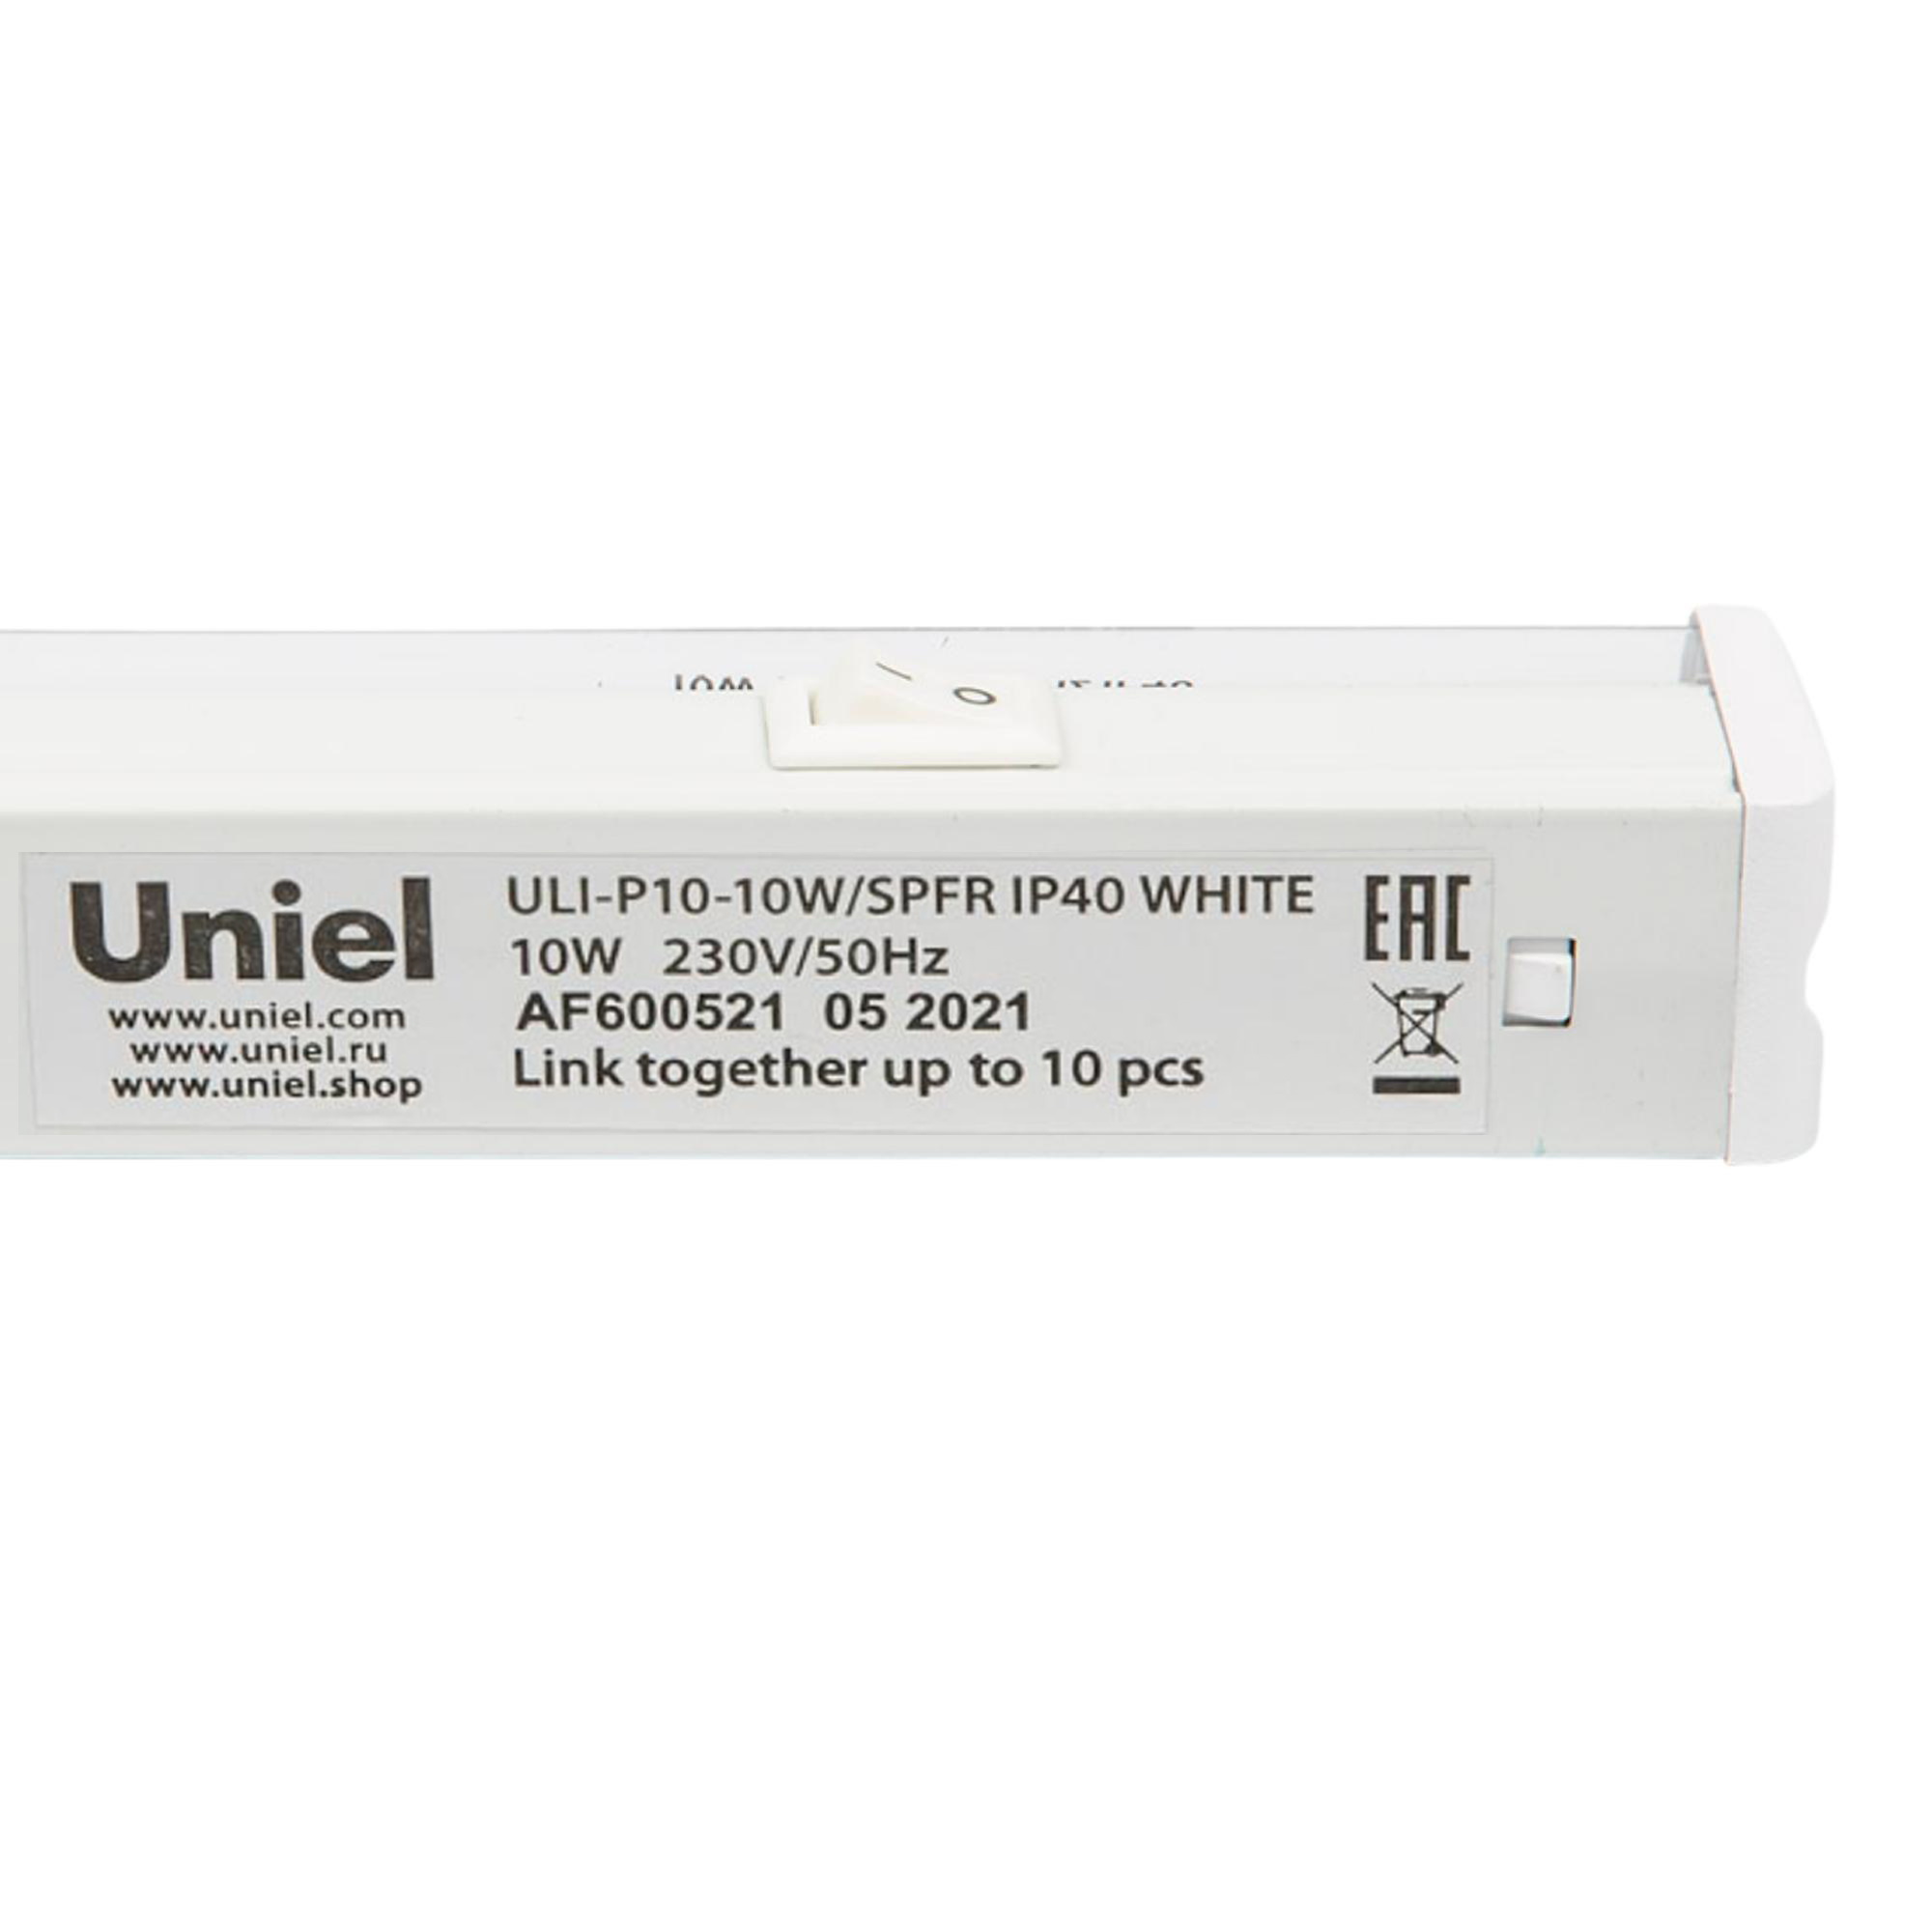 ULI-P10-10W-SPFR IP40 WHITE Светильник для растений светодиодный линейный. 550мм. выкл. на корпусе. Спектр для фотосинтеза. TM Uniel